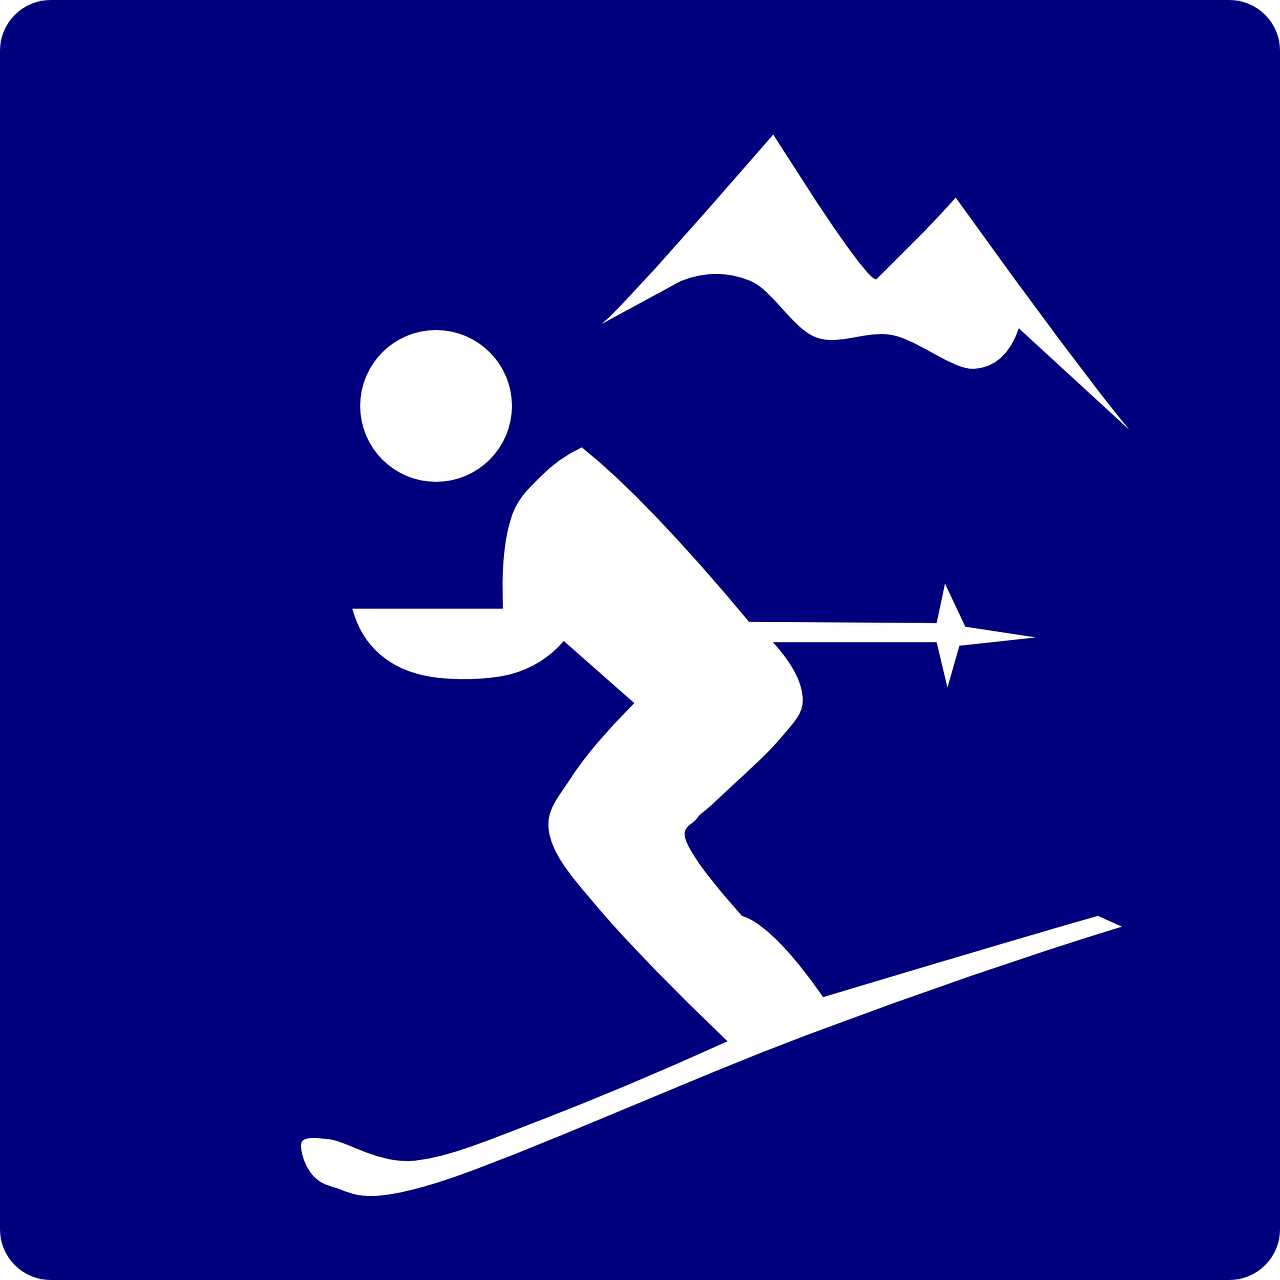 skiing mountain pictogram free photo